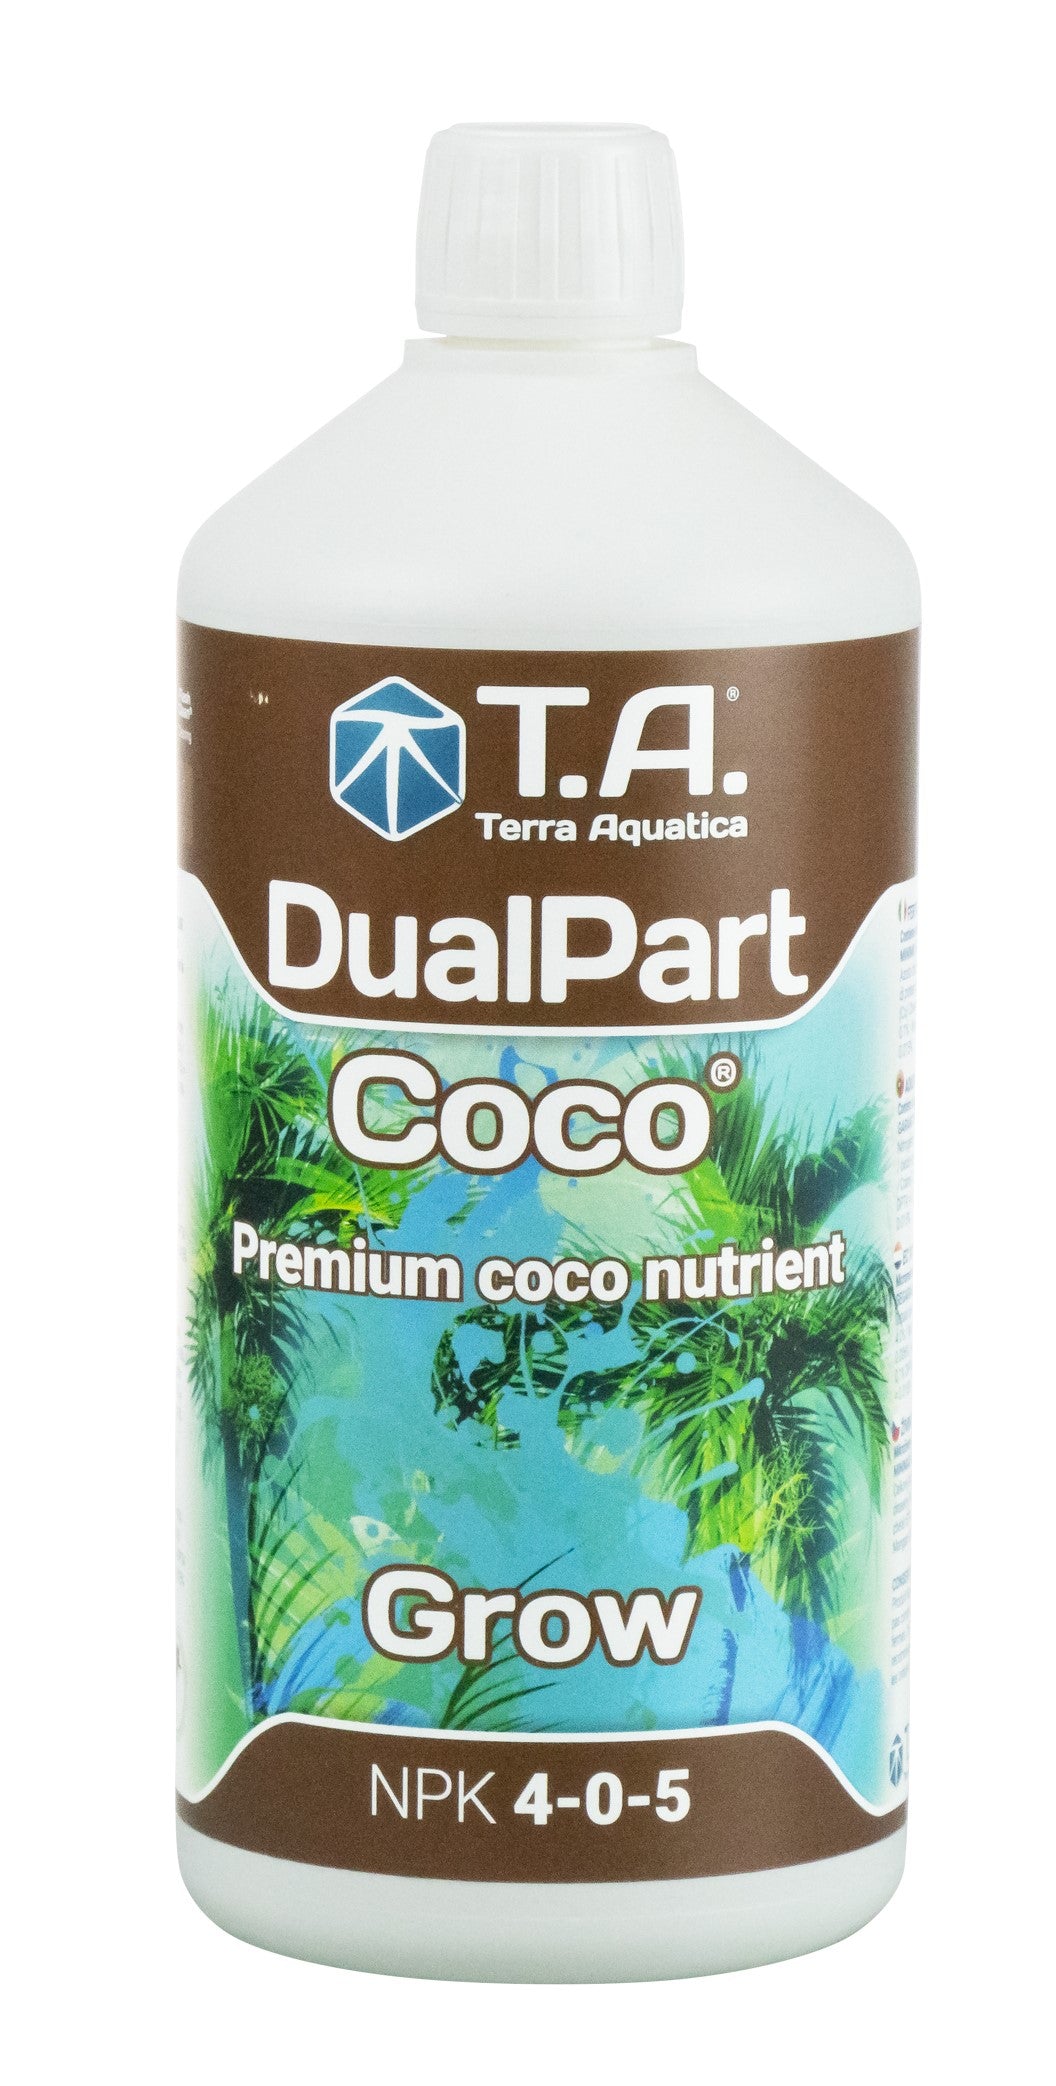 DualPart Coco